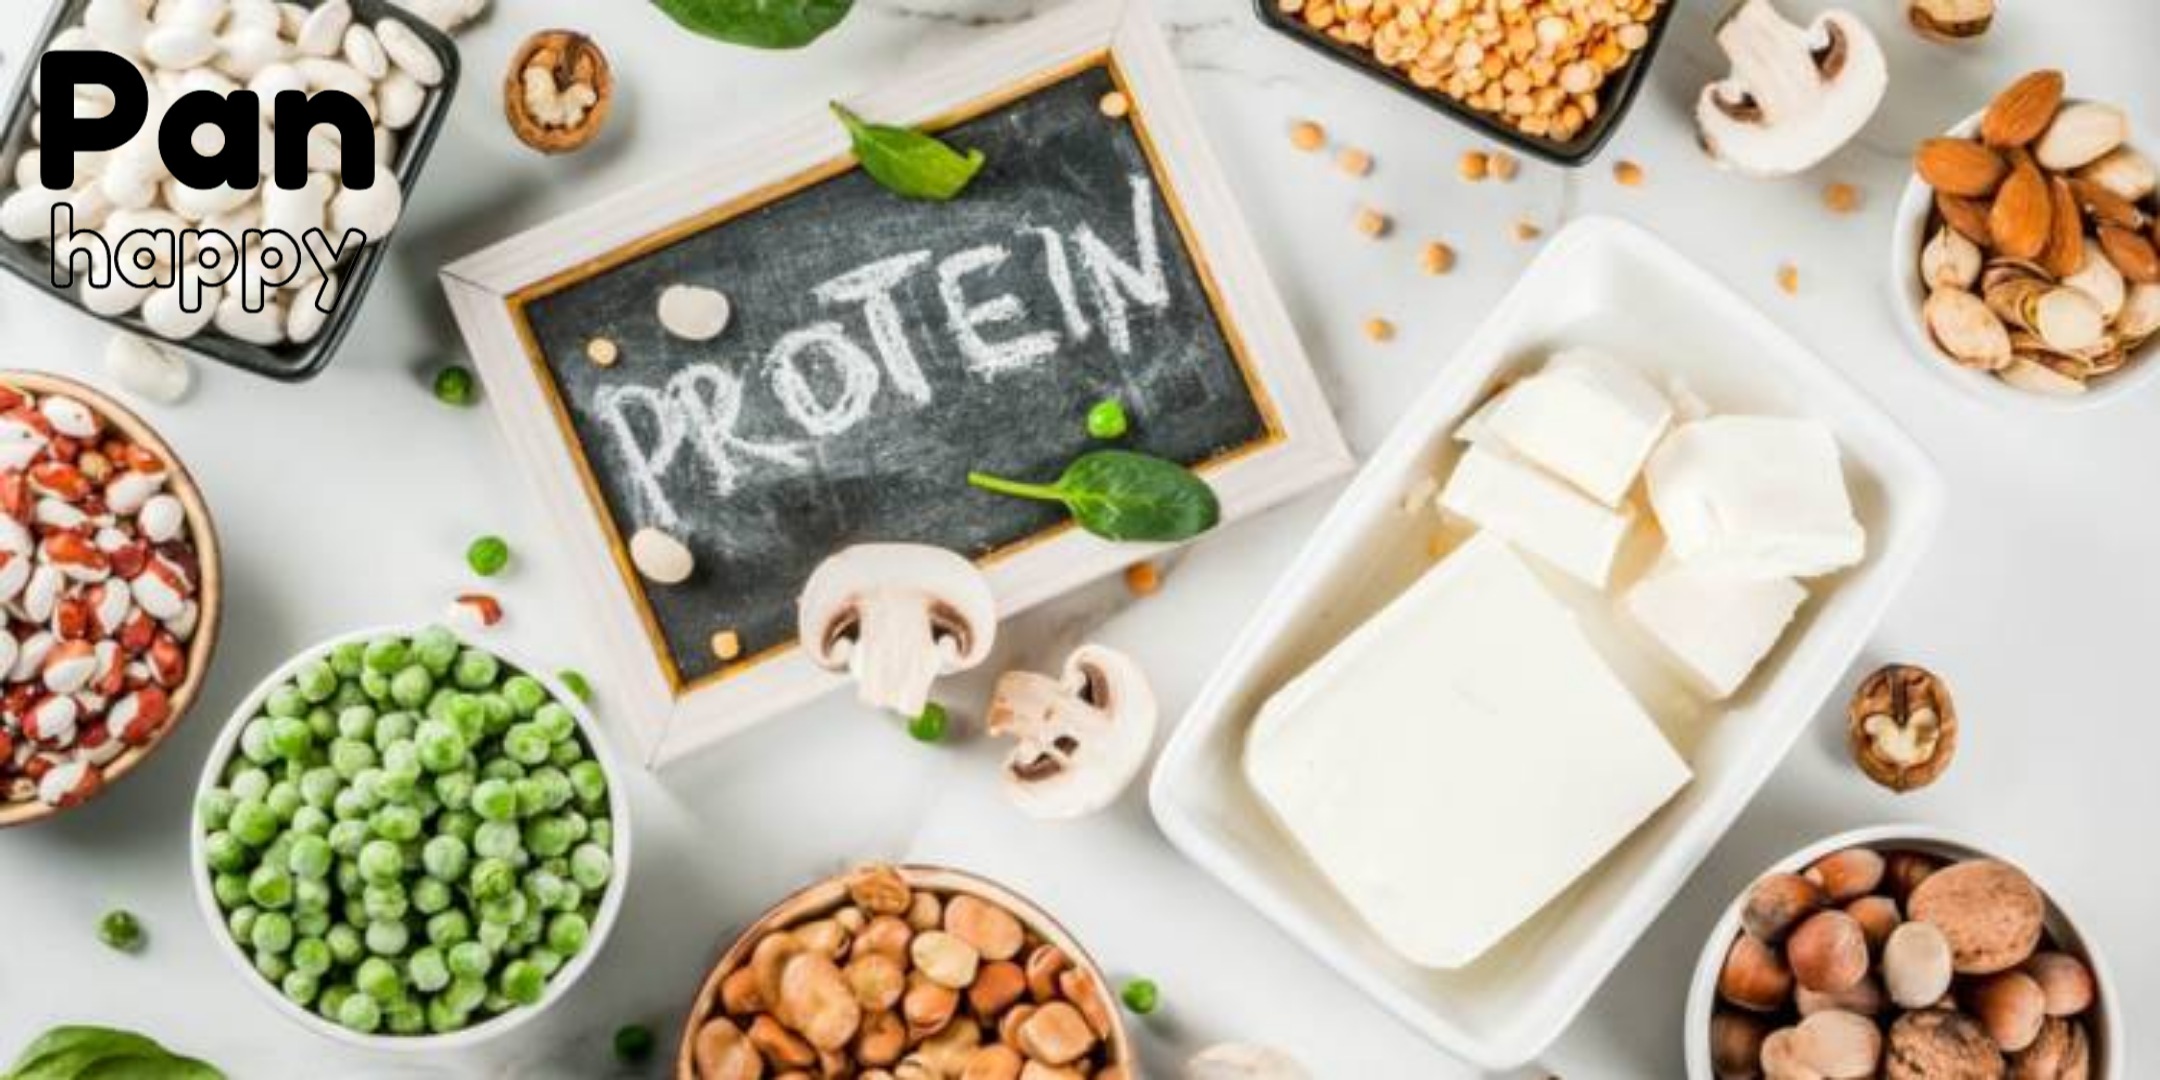 Hướng dẫn bổ sung protein hoàn chỉnh cho người ăn chay